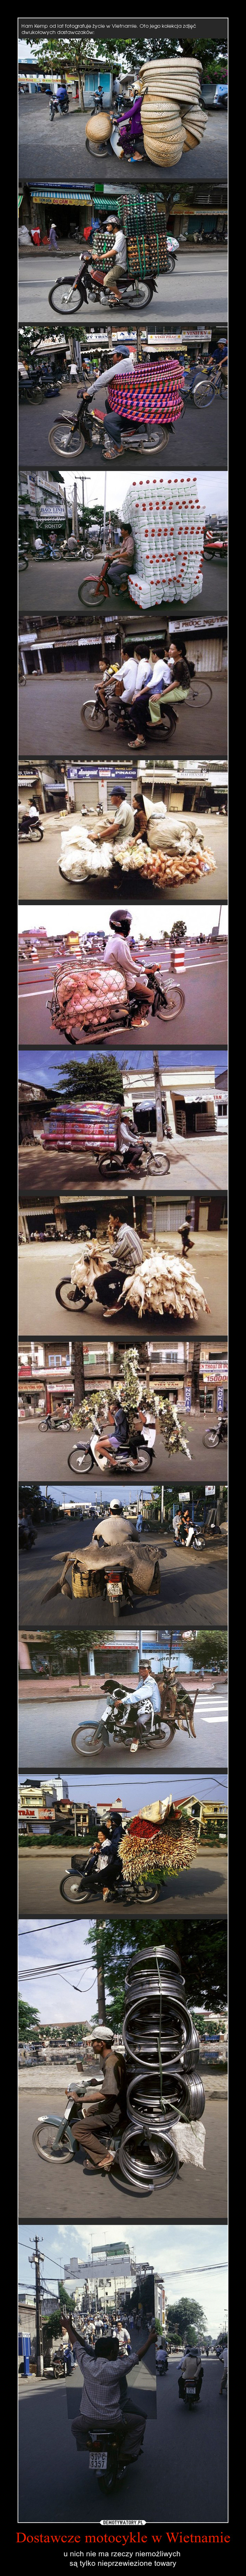 Dostawcze motocykle w Wietnamie – u nich nie ma rzeczy niemożliwych są tylko nieprzewiezione towary 